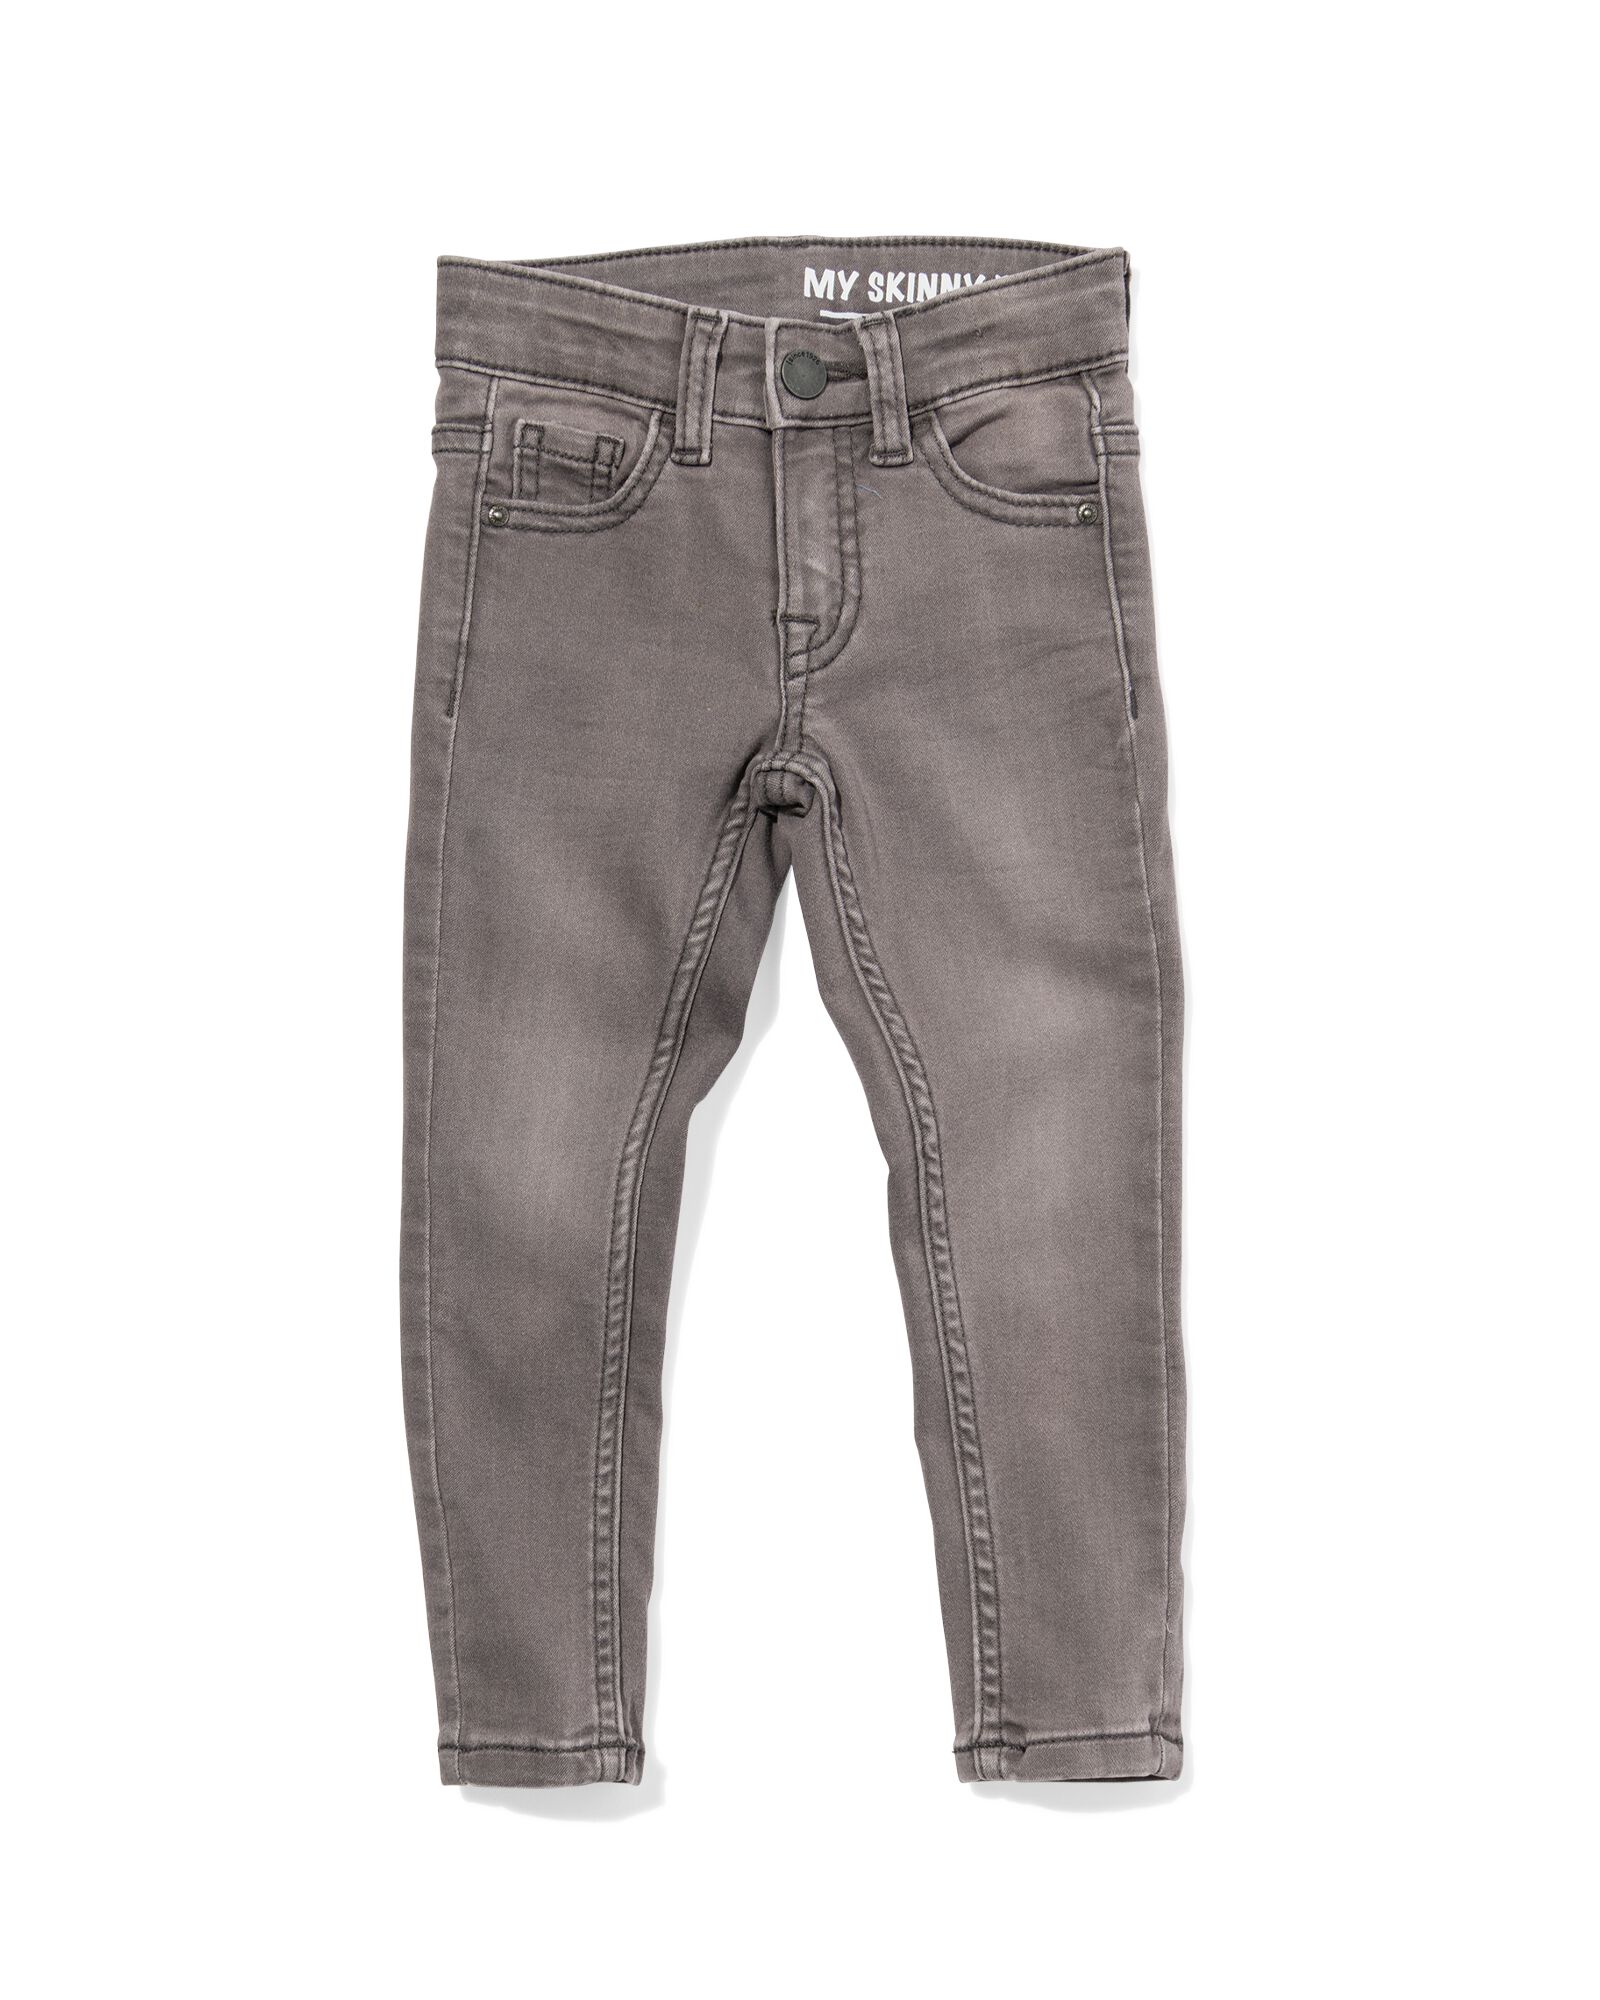 kinder jeans skinny fit grijs 104 - 30874873 - HEMA